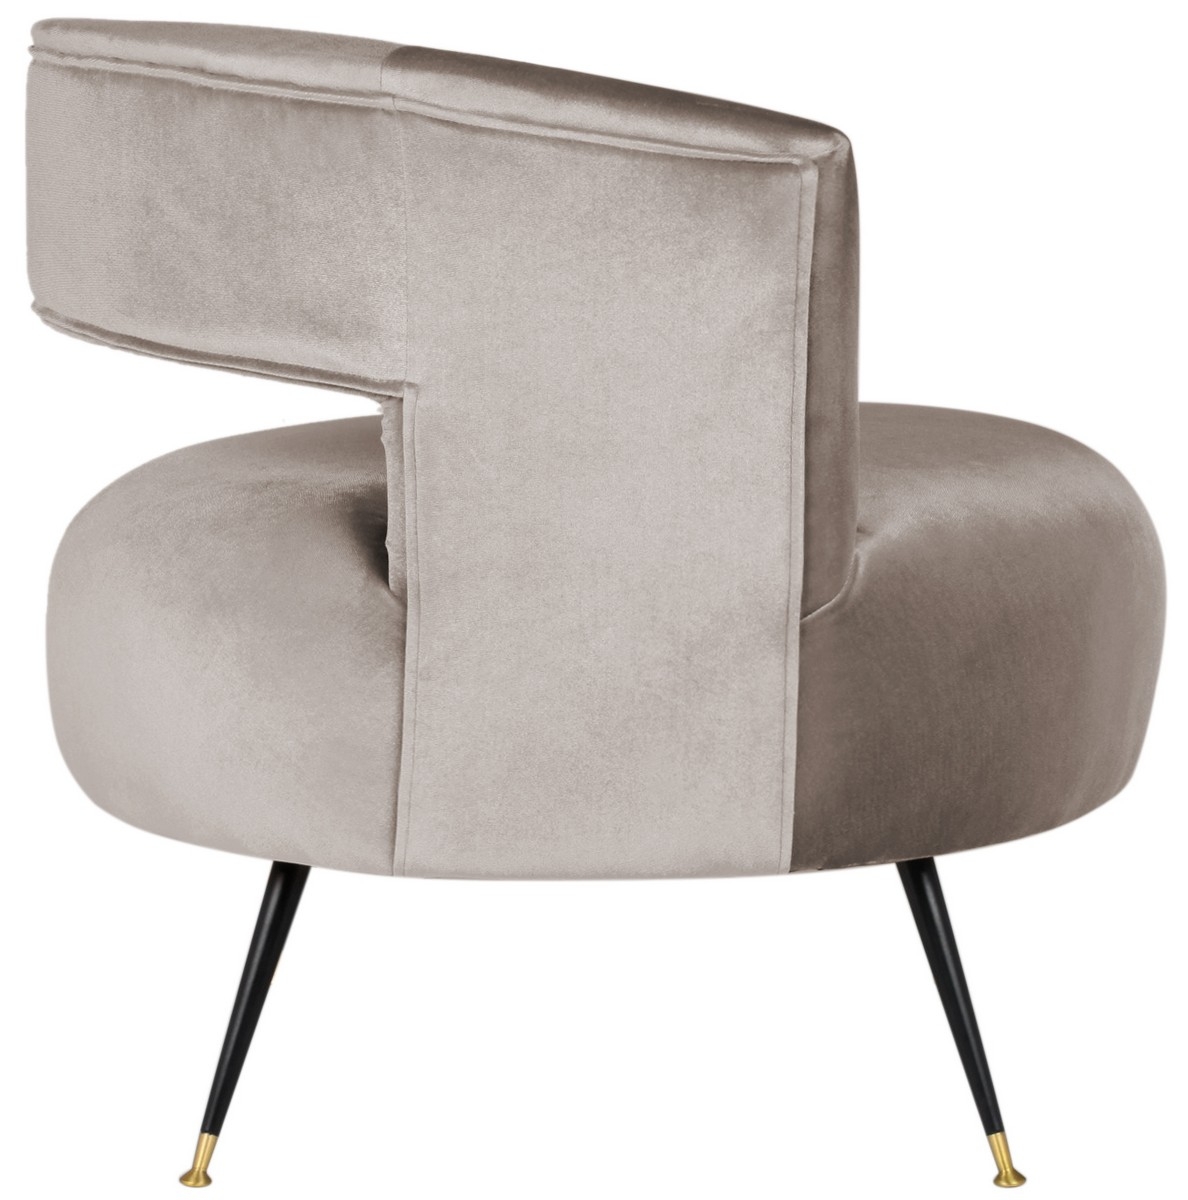 Manet Velvet Retro Mid Century Accent Chair - Hazelwood - Arlo Home - Image 4